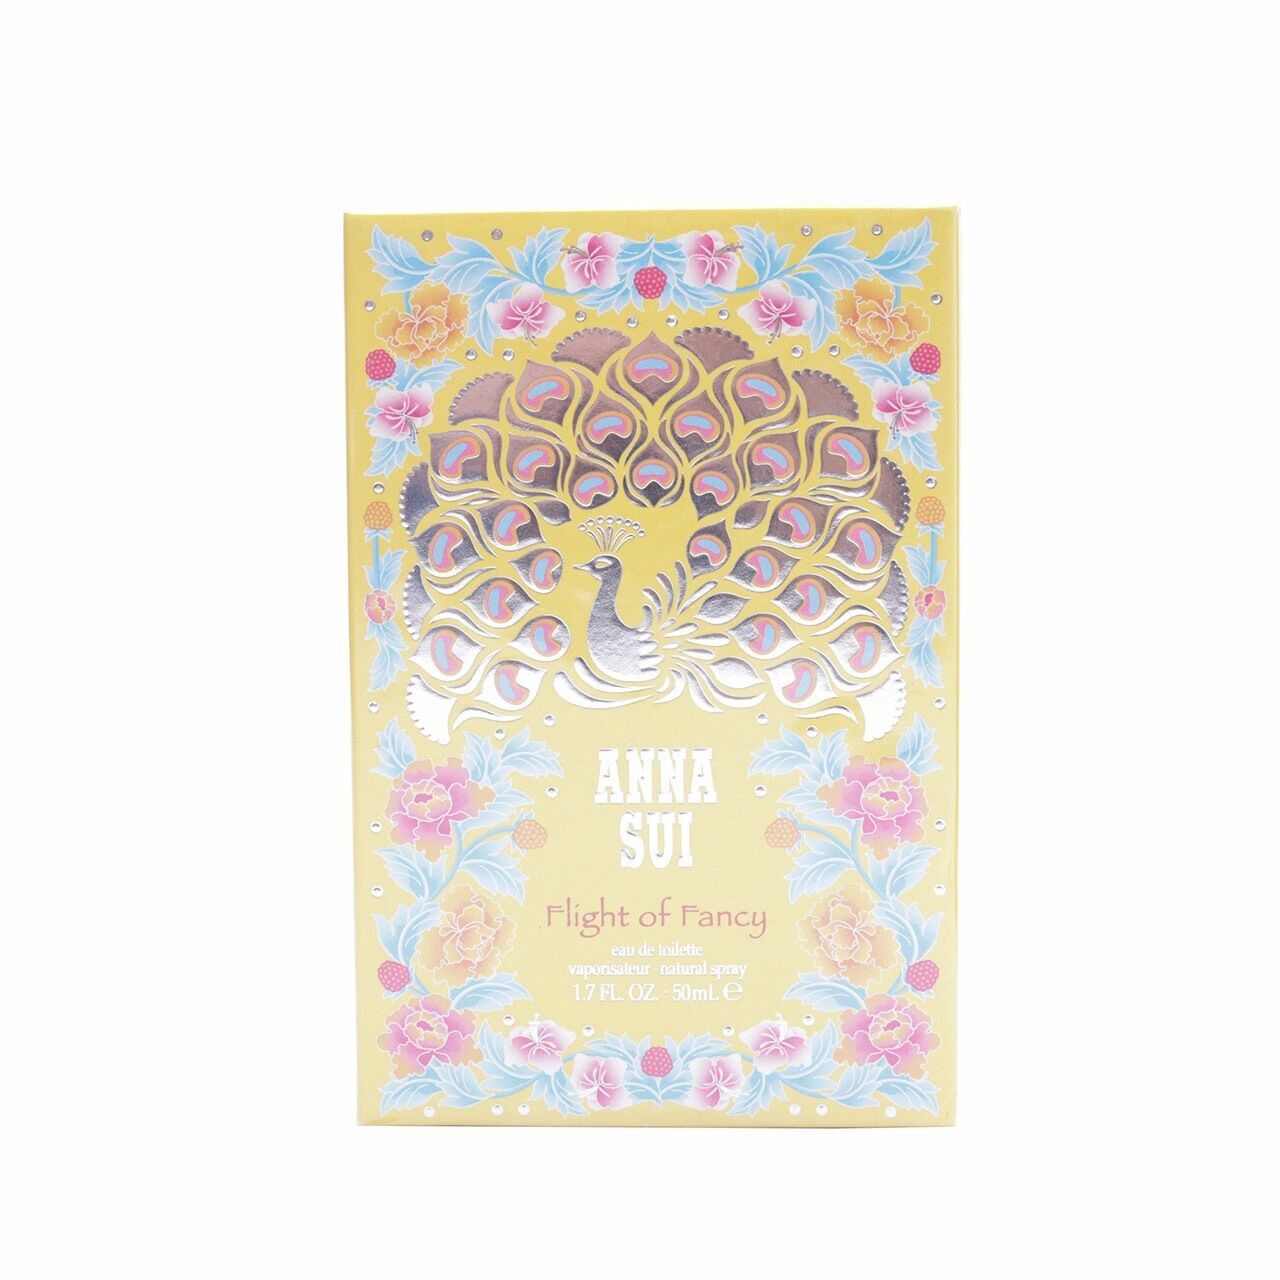 Anna Sui Flight Of Fancy Eau de Toilette Natural Spray Fragrance